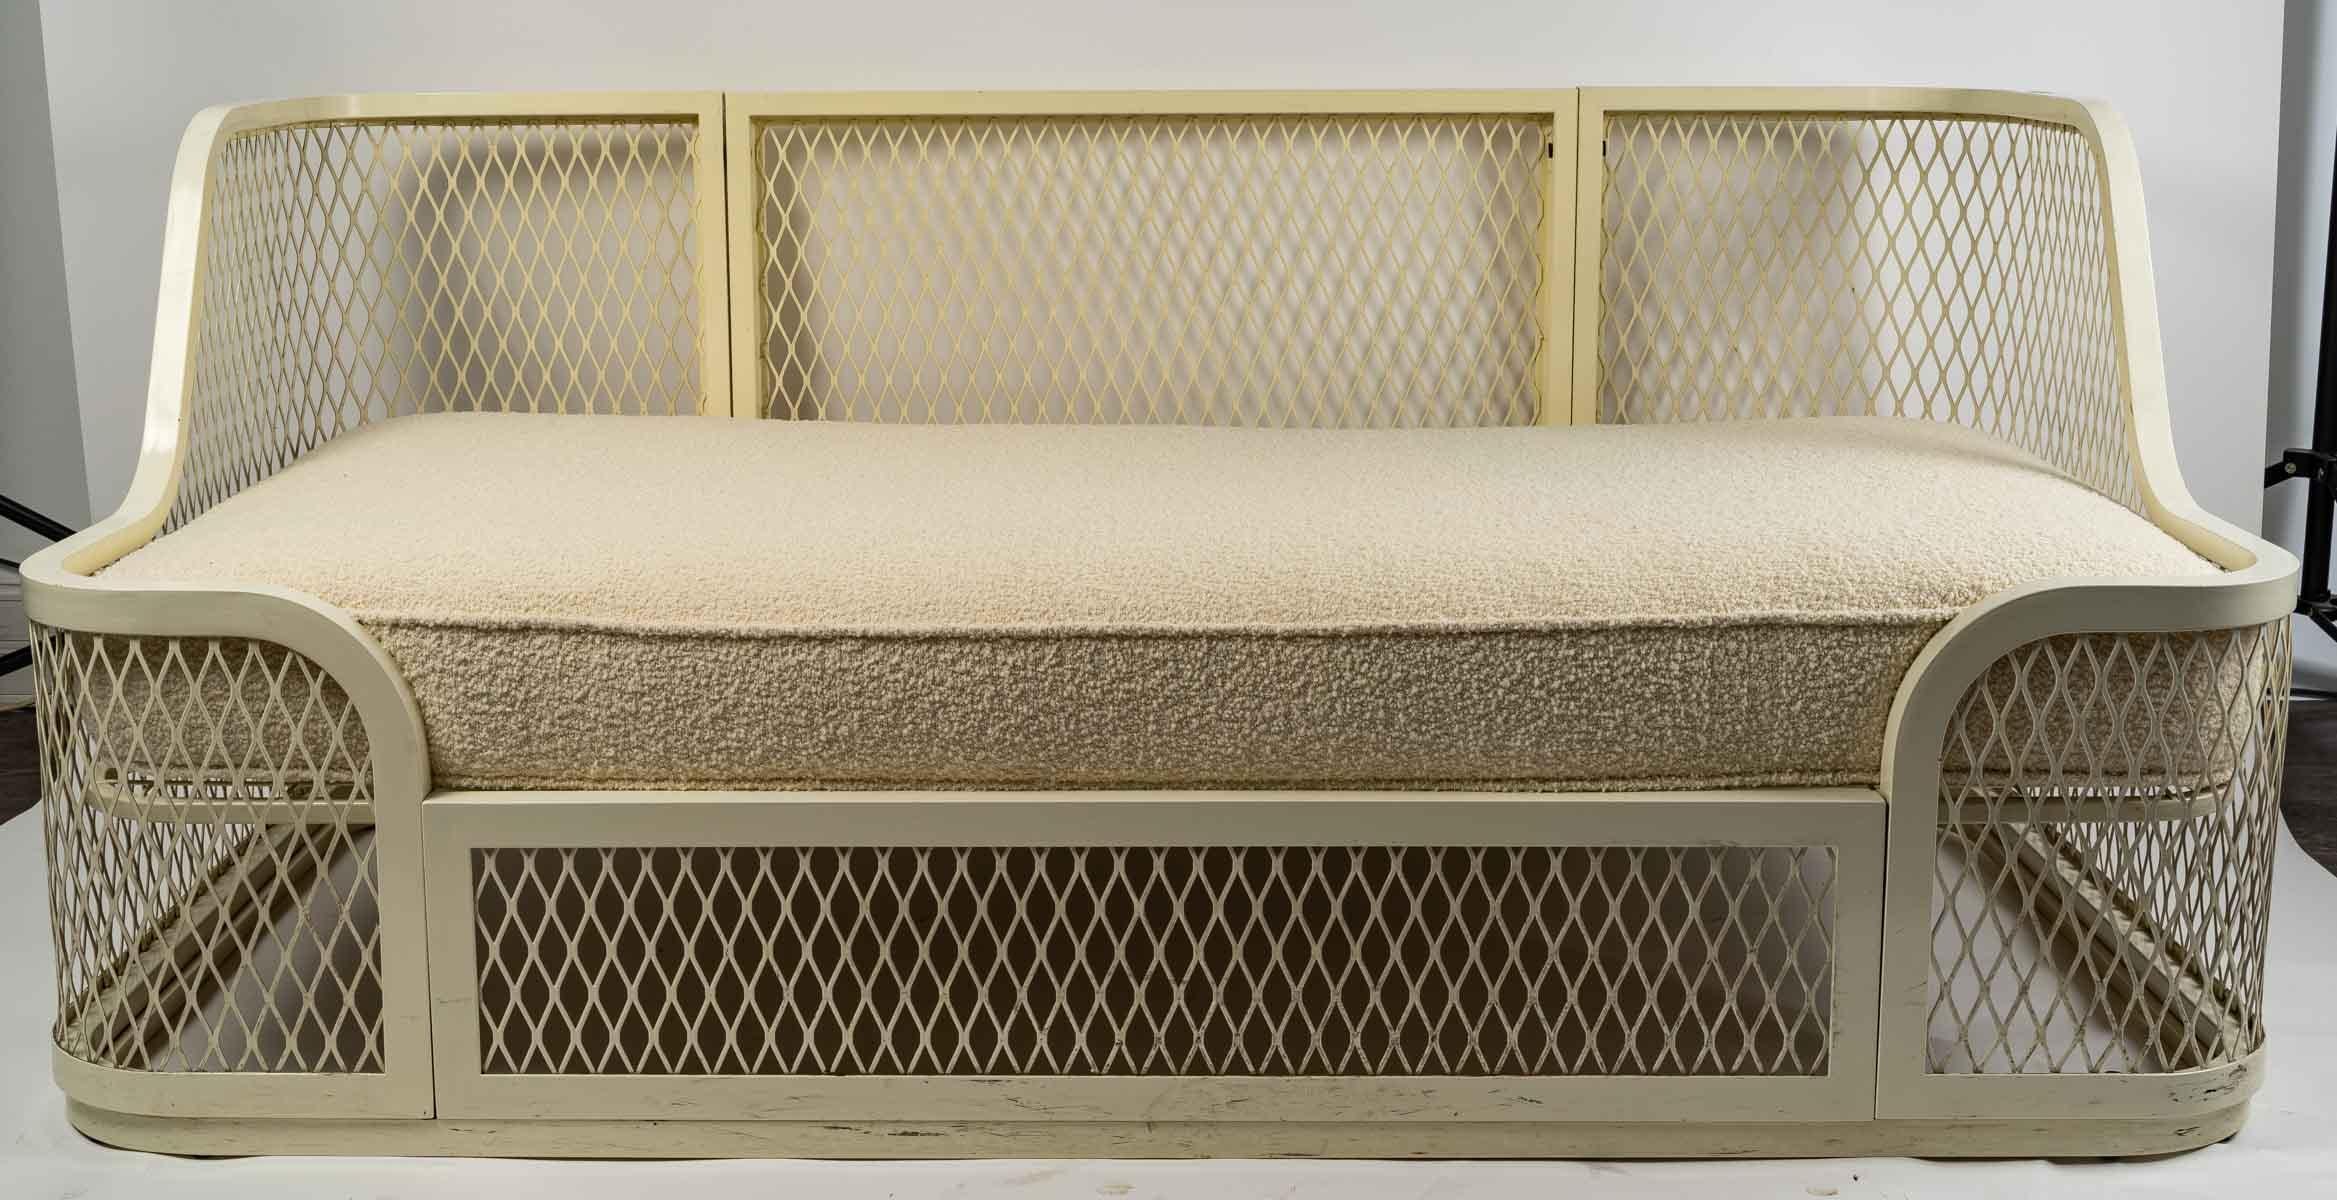 Design-Sofa 1980 aus weiß lackiertem Metall und Kissen.
Maße: H: 71 cm, B: 161 cm, T: 86 cm.